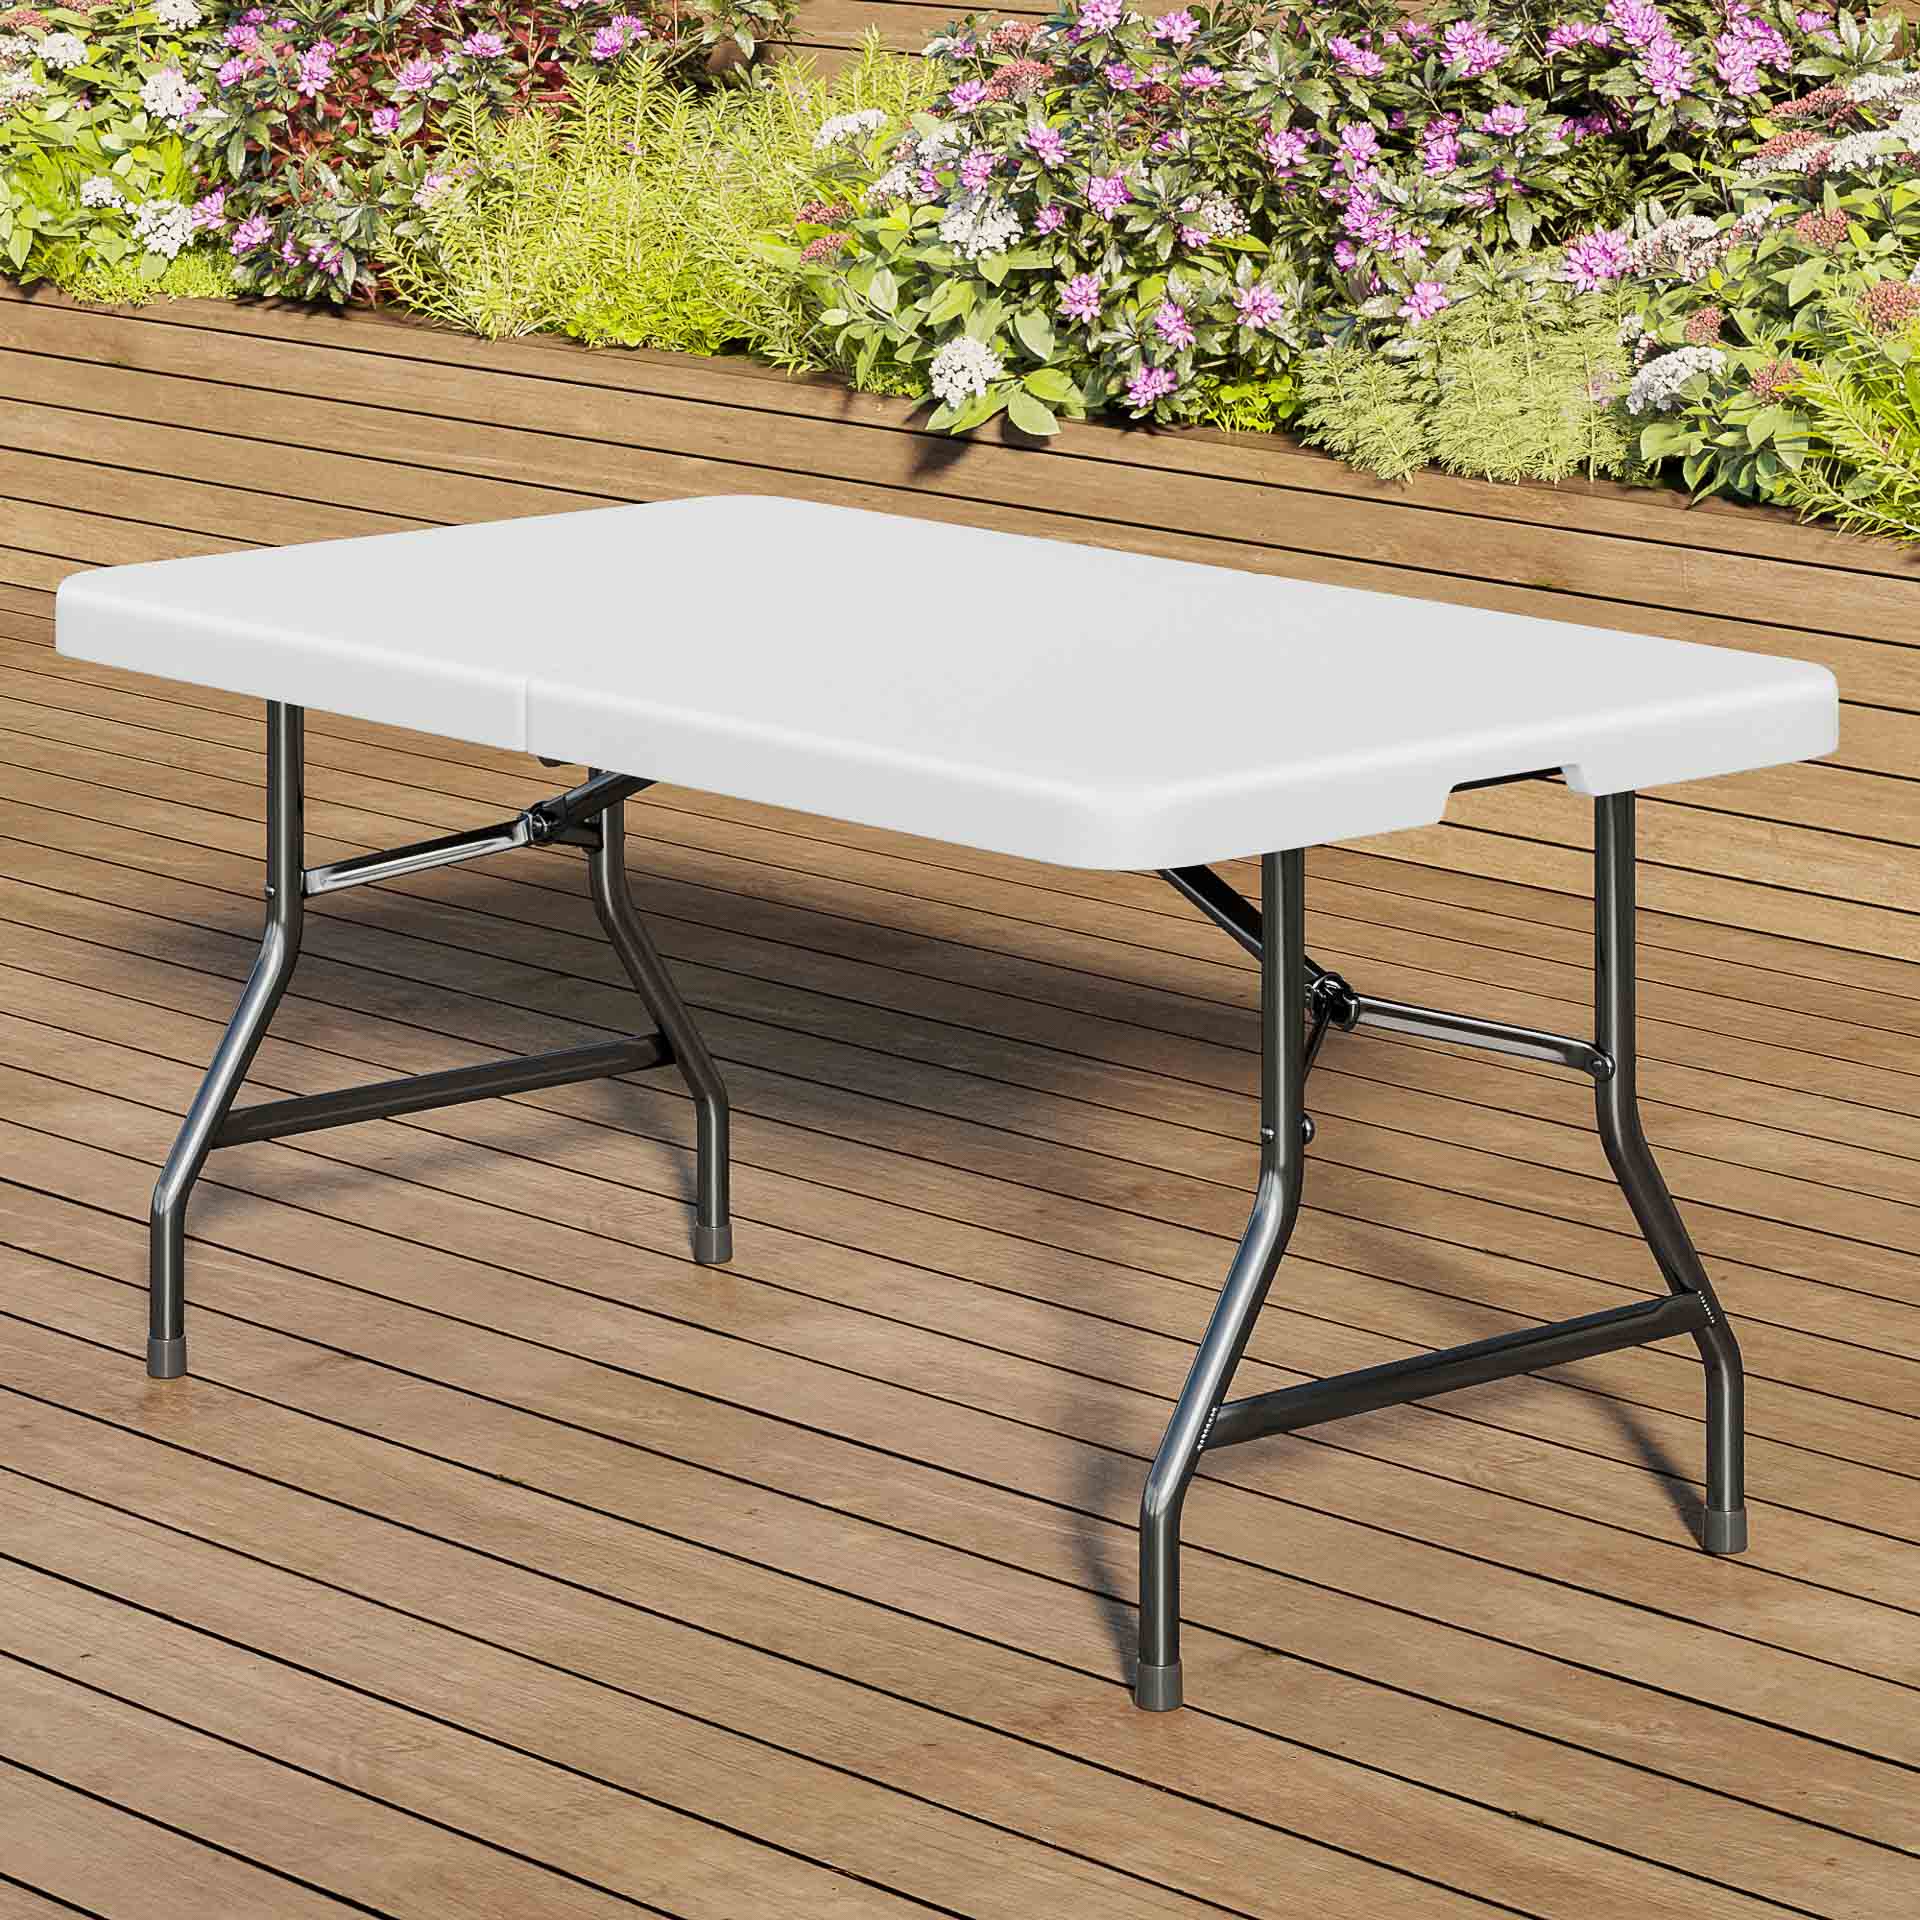 Table Pliante hauteur ajustable HDPE 240 x 76 cm - Vente de